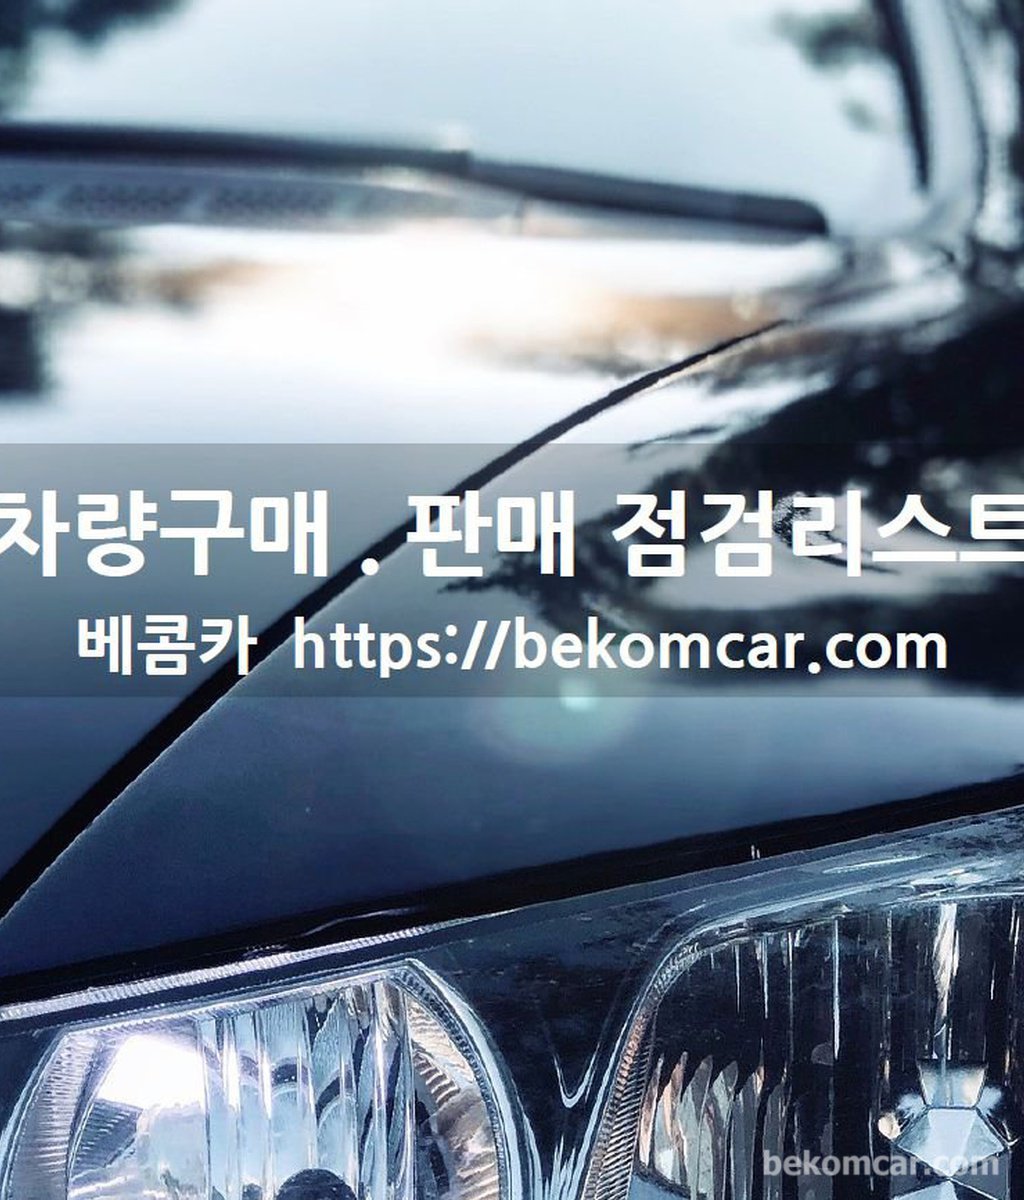 중고차 구매.판매시 점검 체크리스트 다운로드|bekomcar.com